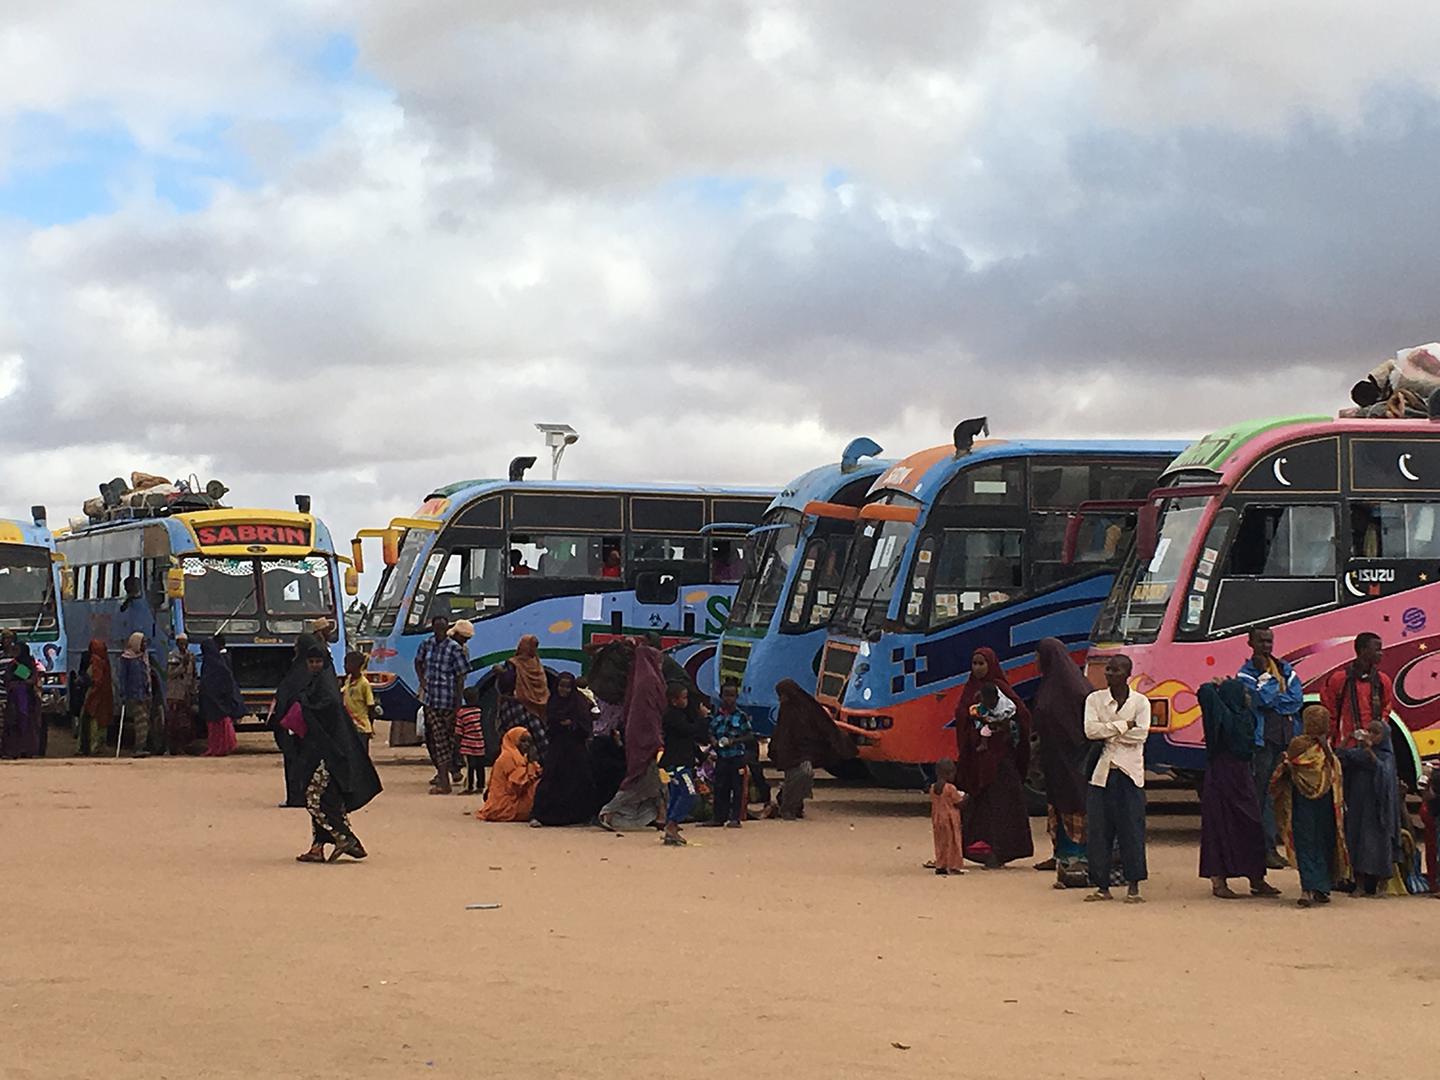 Des réfugiés somaliens attendent de monter dans des bus qui les rapatrieront en Somalie, après l'annonce par le gouvernement du Kenya de la fermeture des camps de réfugiés de Dadaab.